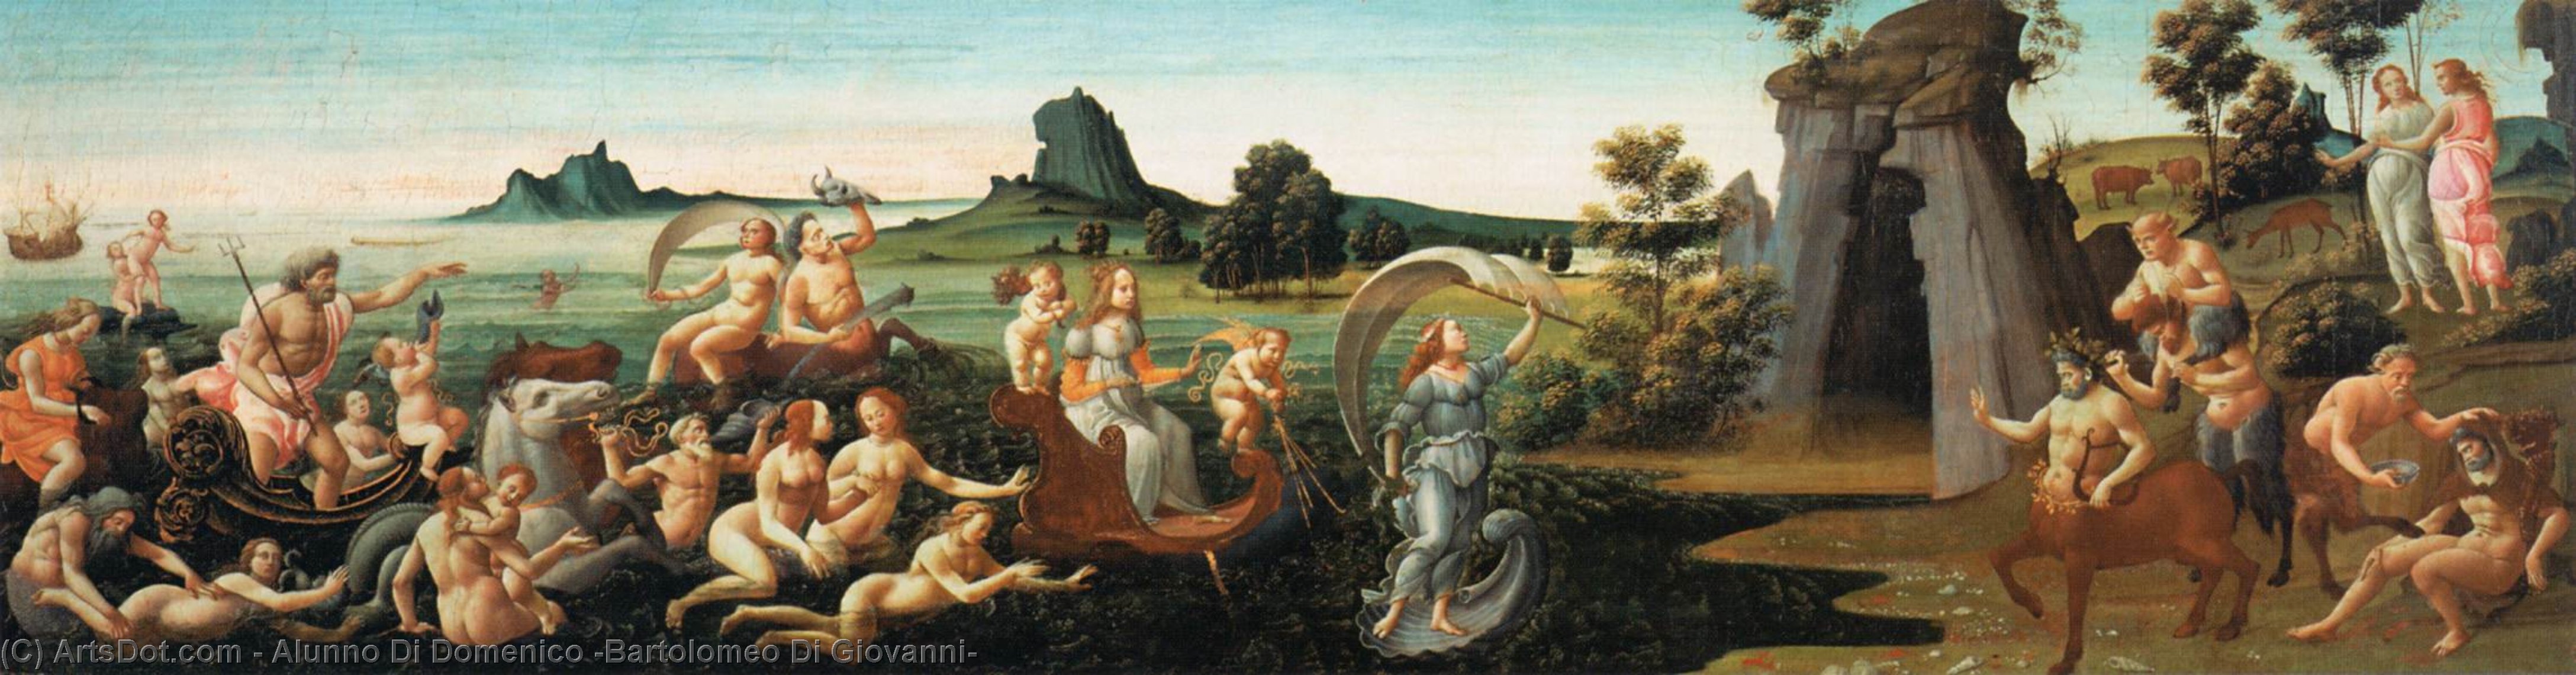 Wikioo.org - Bách khoa toàn thư về mỹ thuật - Vẽ tranh, Tác phẩm nghệ thuật Alunno Di Domenico (Bartolomeo Di Giovanni) - Procession of Thetis